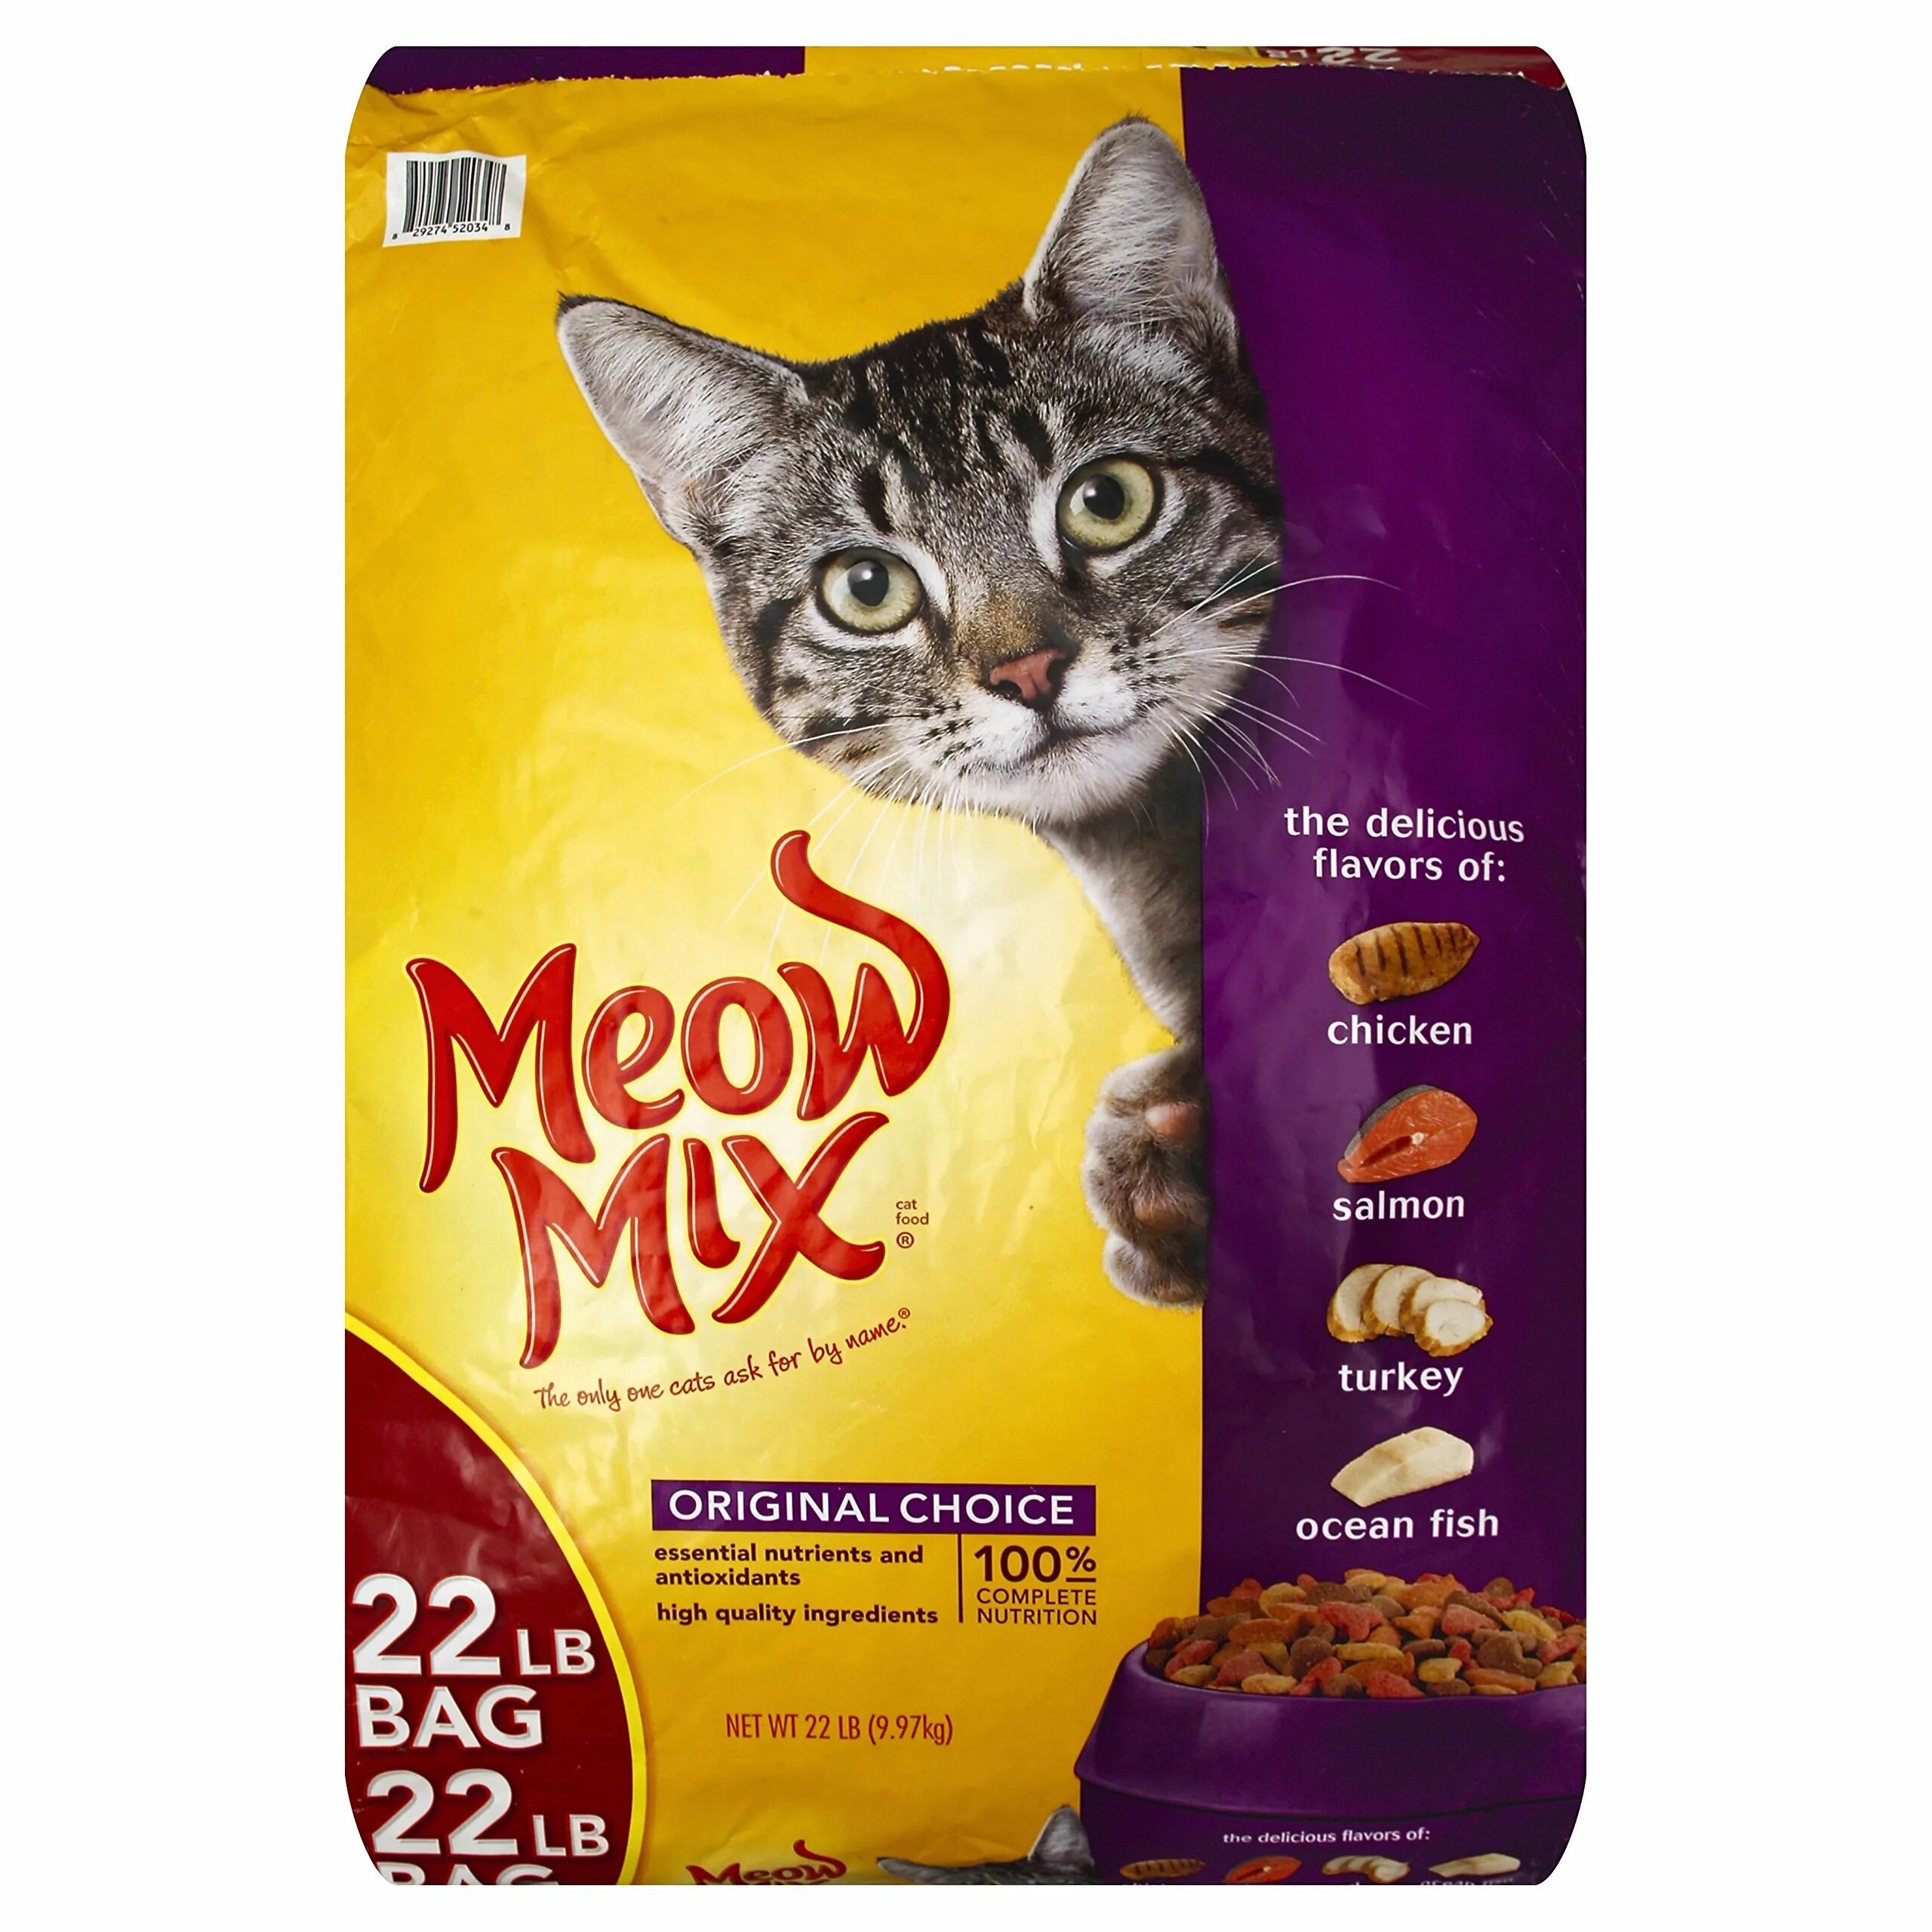 Программа корм для кота. Корм(Meow Mix)Original choice 100г. Мяу микс корм для кошек. Cat food корм для кошек. Кошачий корм на английском.